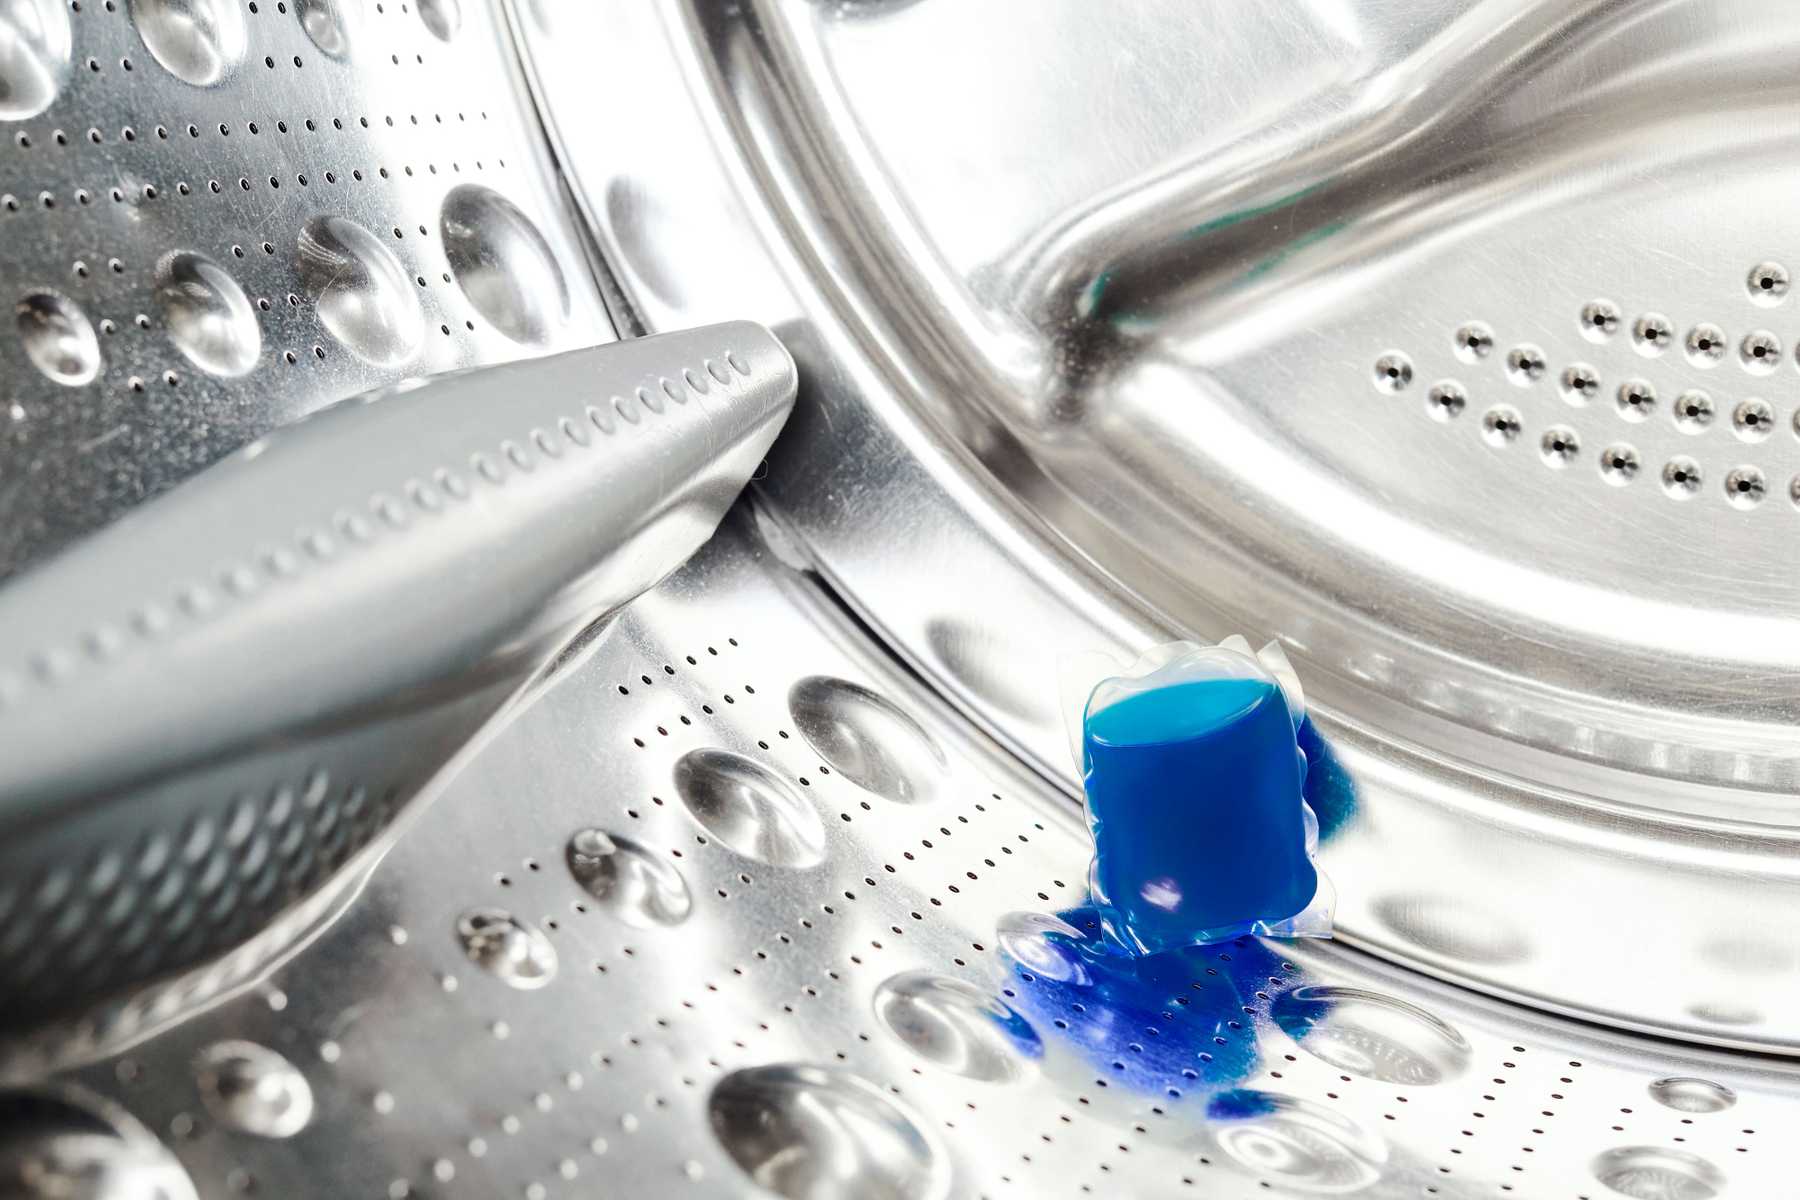 Bảo trì vệ sinh máy giặt Electrolux thường xuyên để sử dụng bền lâu